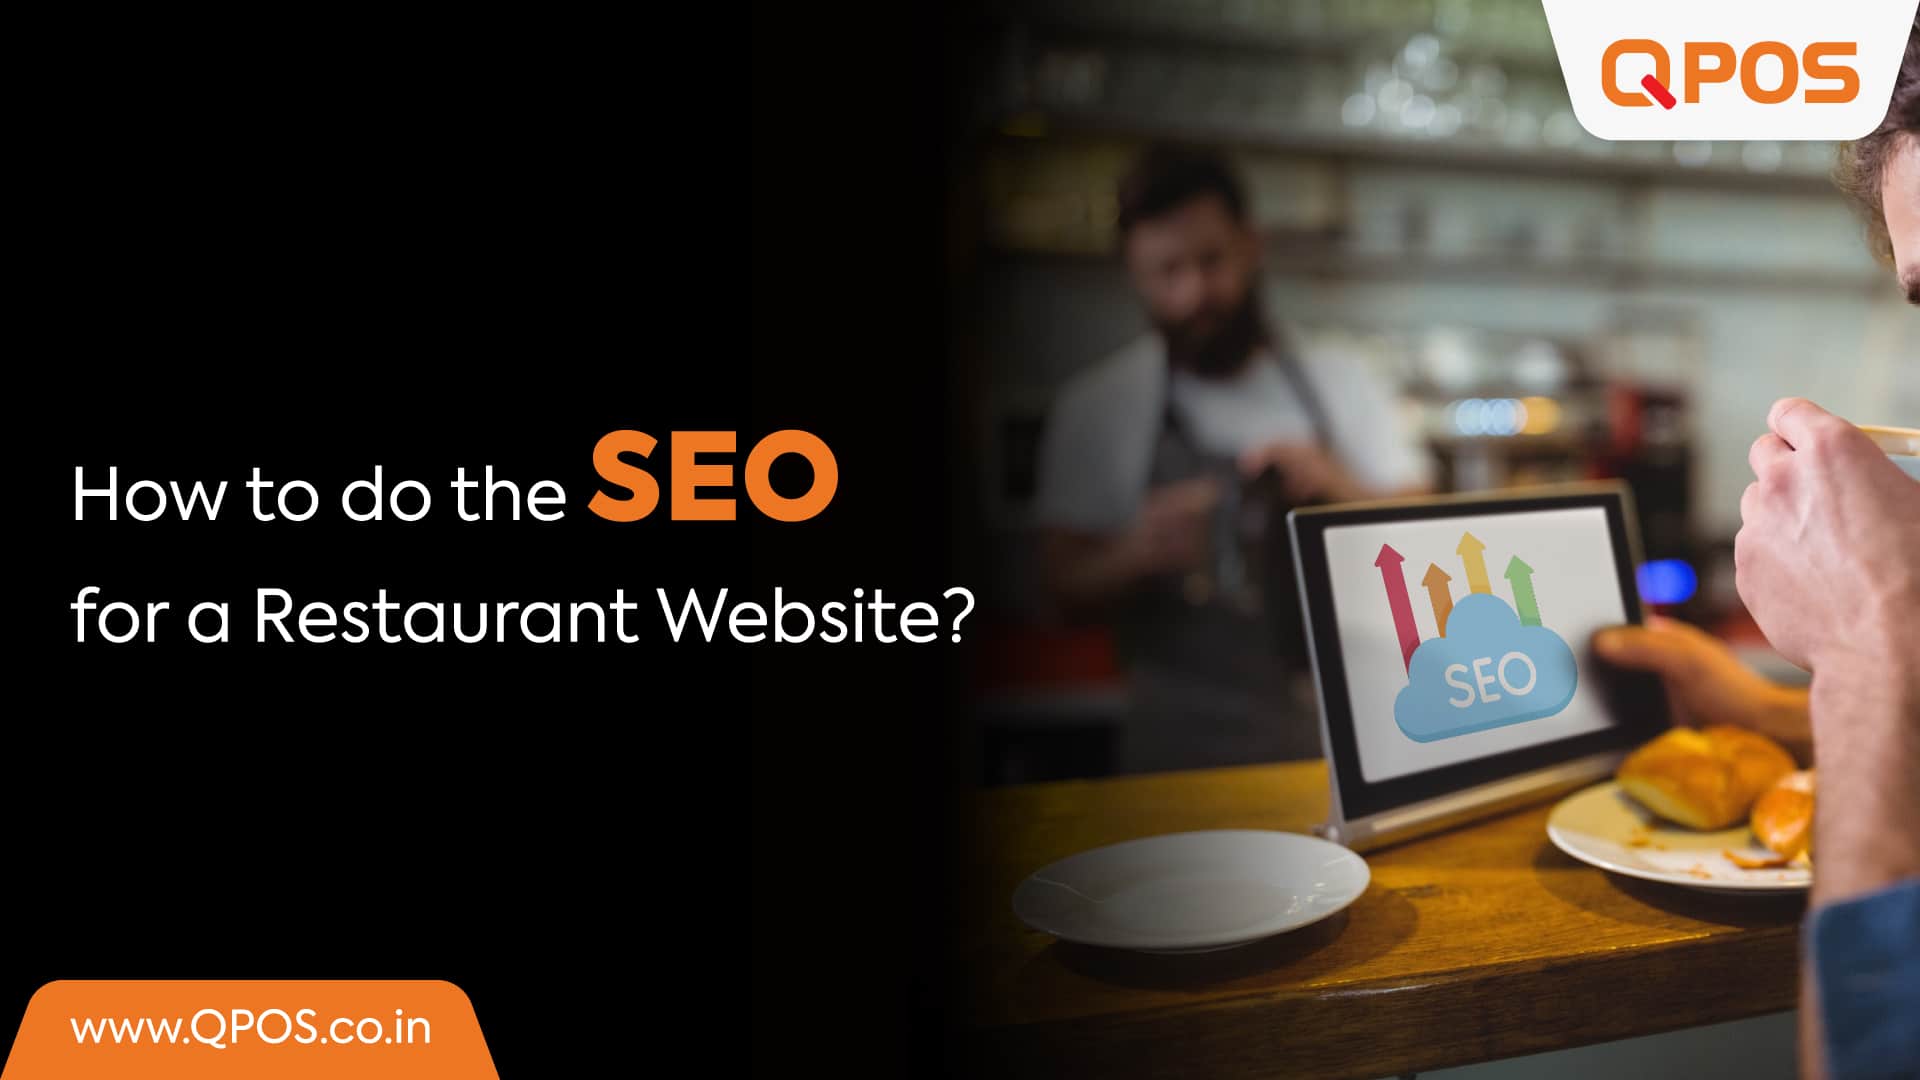 How to Do the SEO for a Restaurant Website